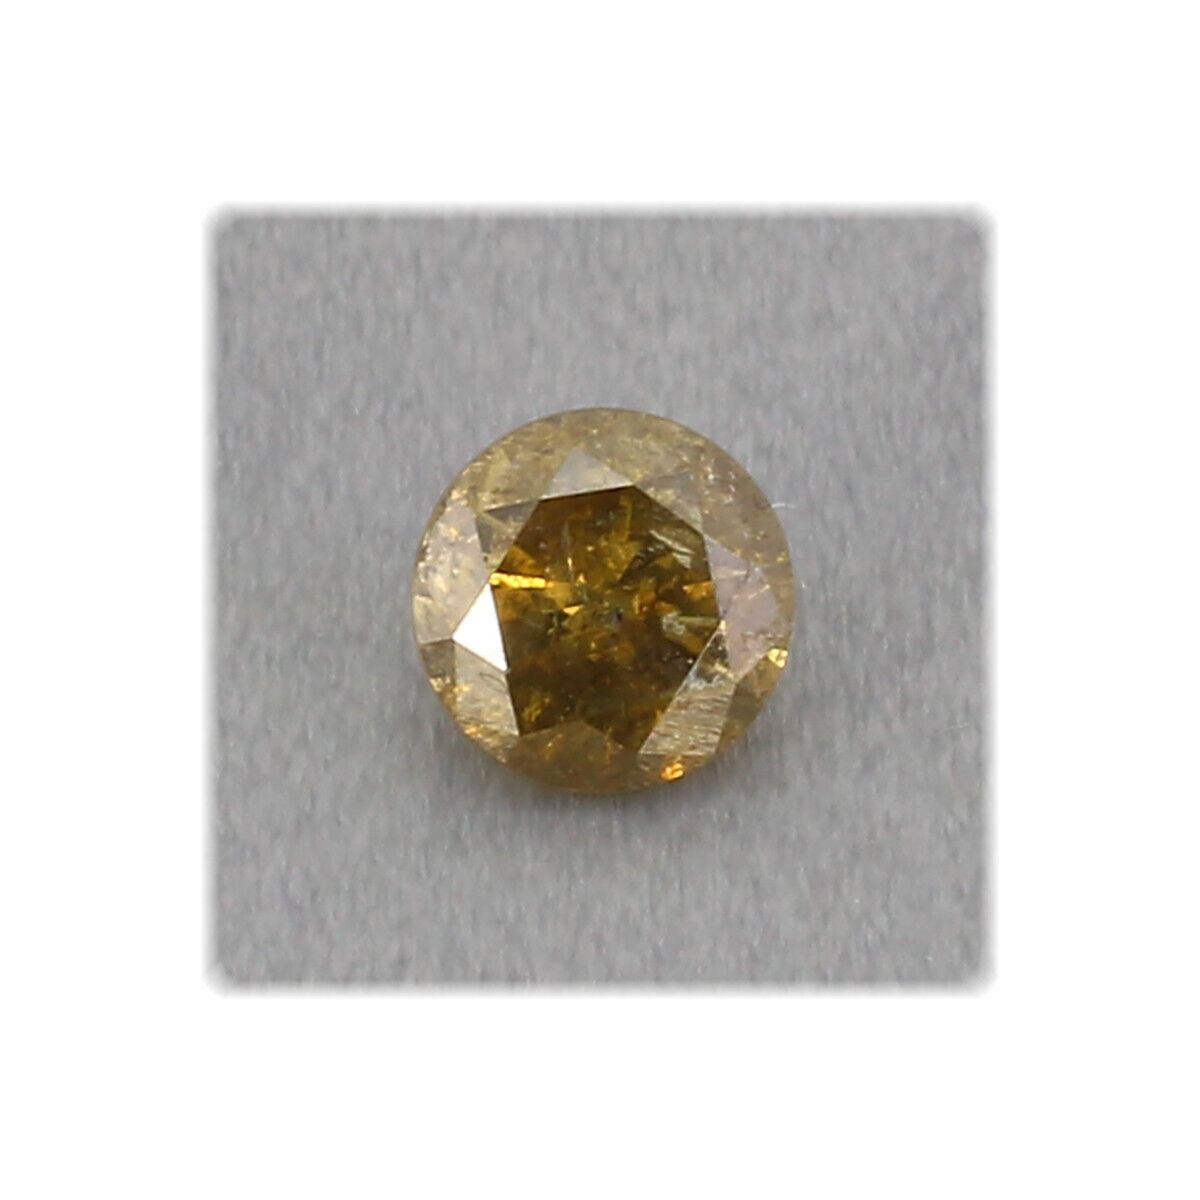 Diamant facettiert / rund / 4,5 mm / 0,44 ct. / Farbe Gelbbraun / Afrika